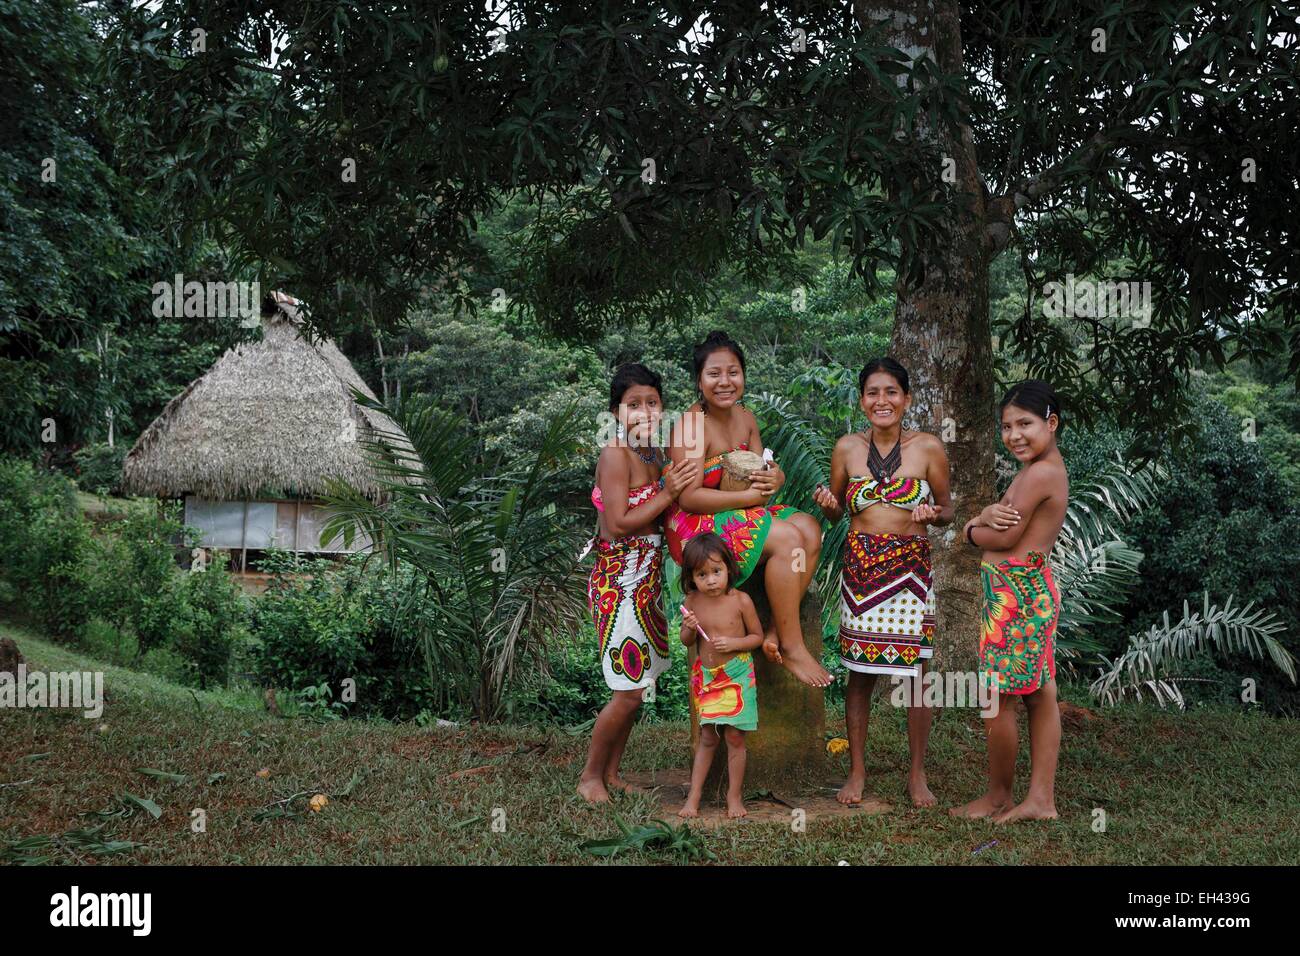 Panama, provincia di Darien, Parco Nazionale del Darién, classificato come patrimonio mondiale dall UNESCO, Embera comunità indigena, ritratto di un Embera famiglia indigena in una vegetazione tropicale Foto Stock